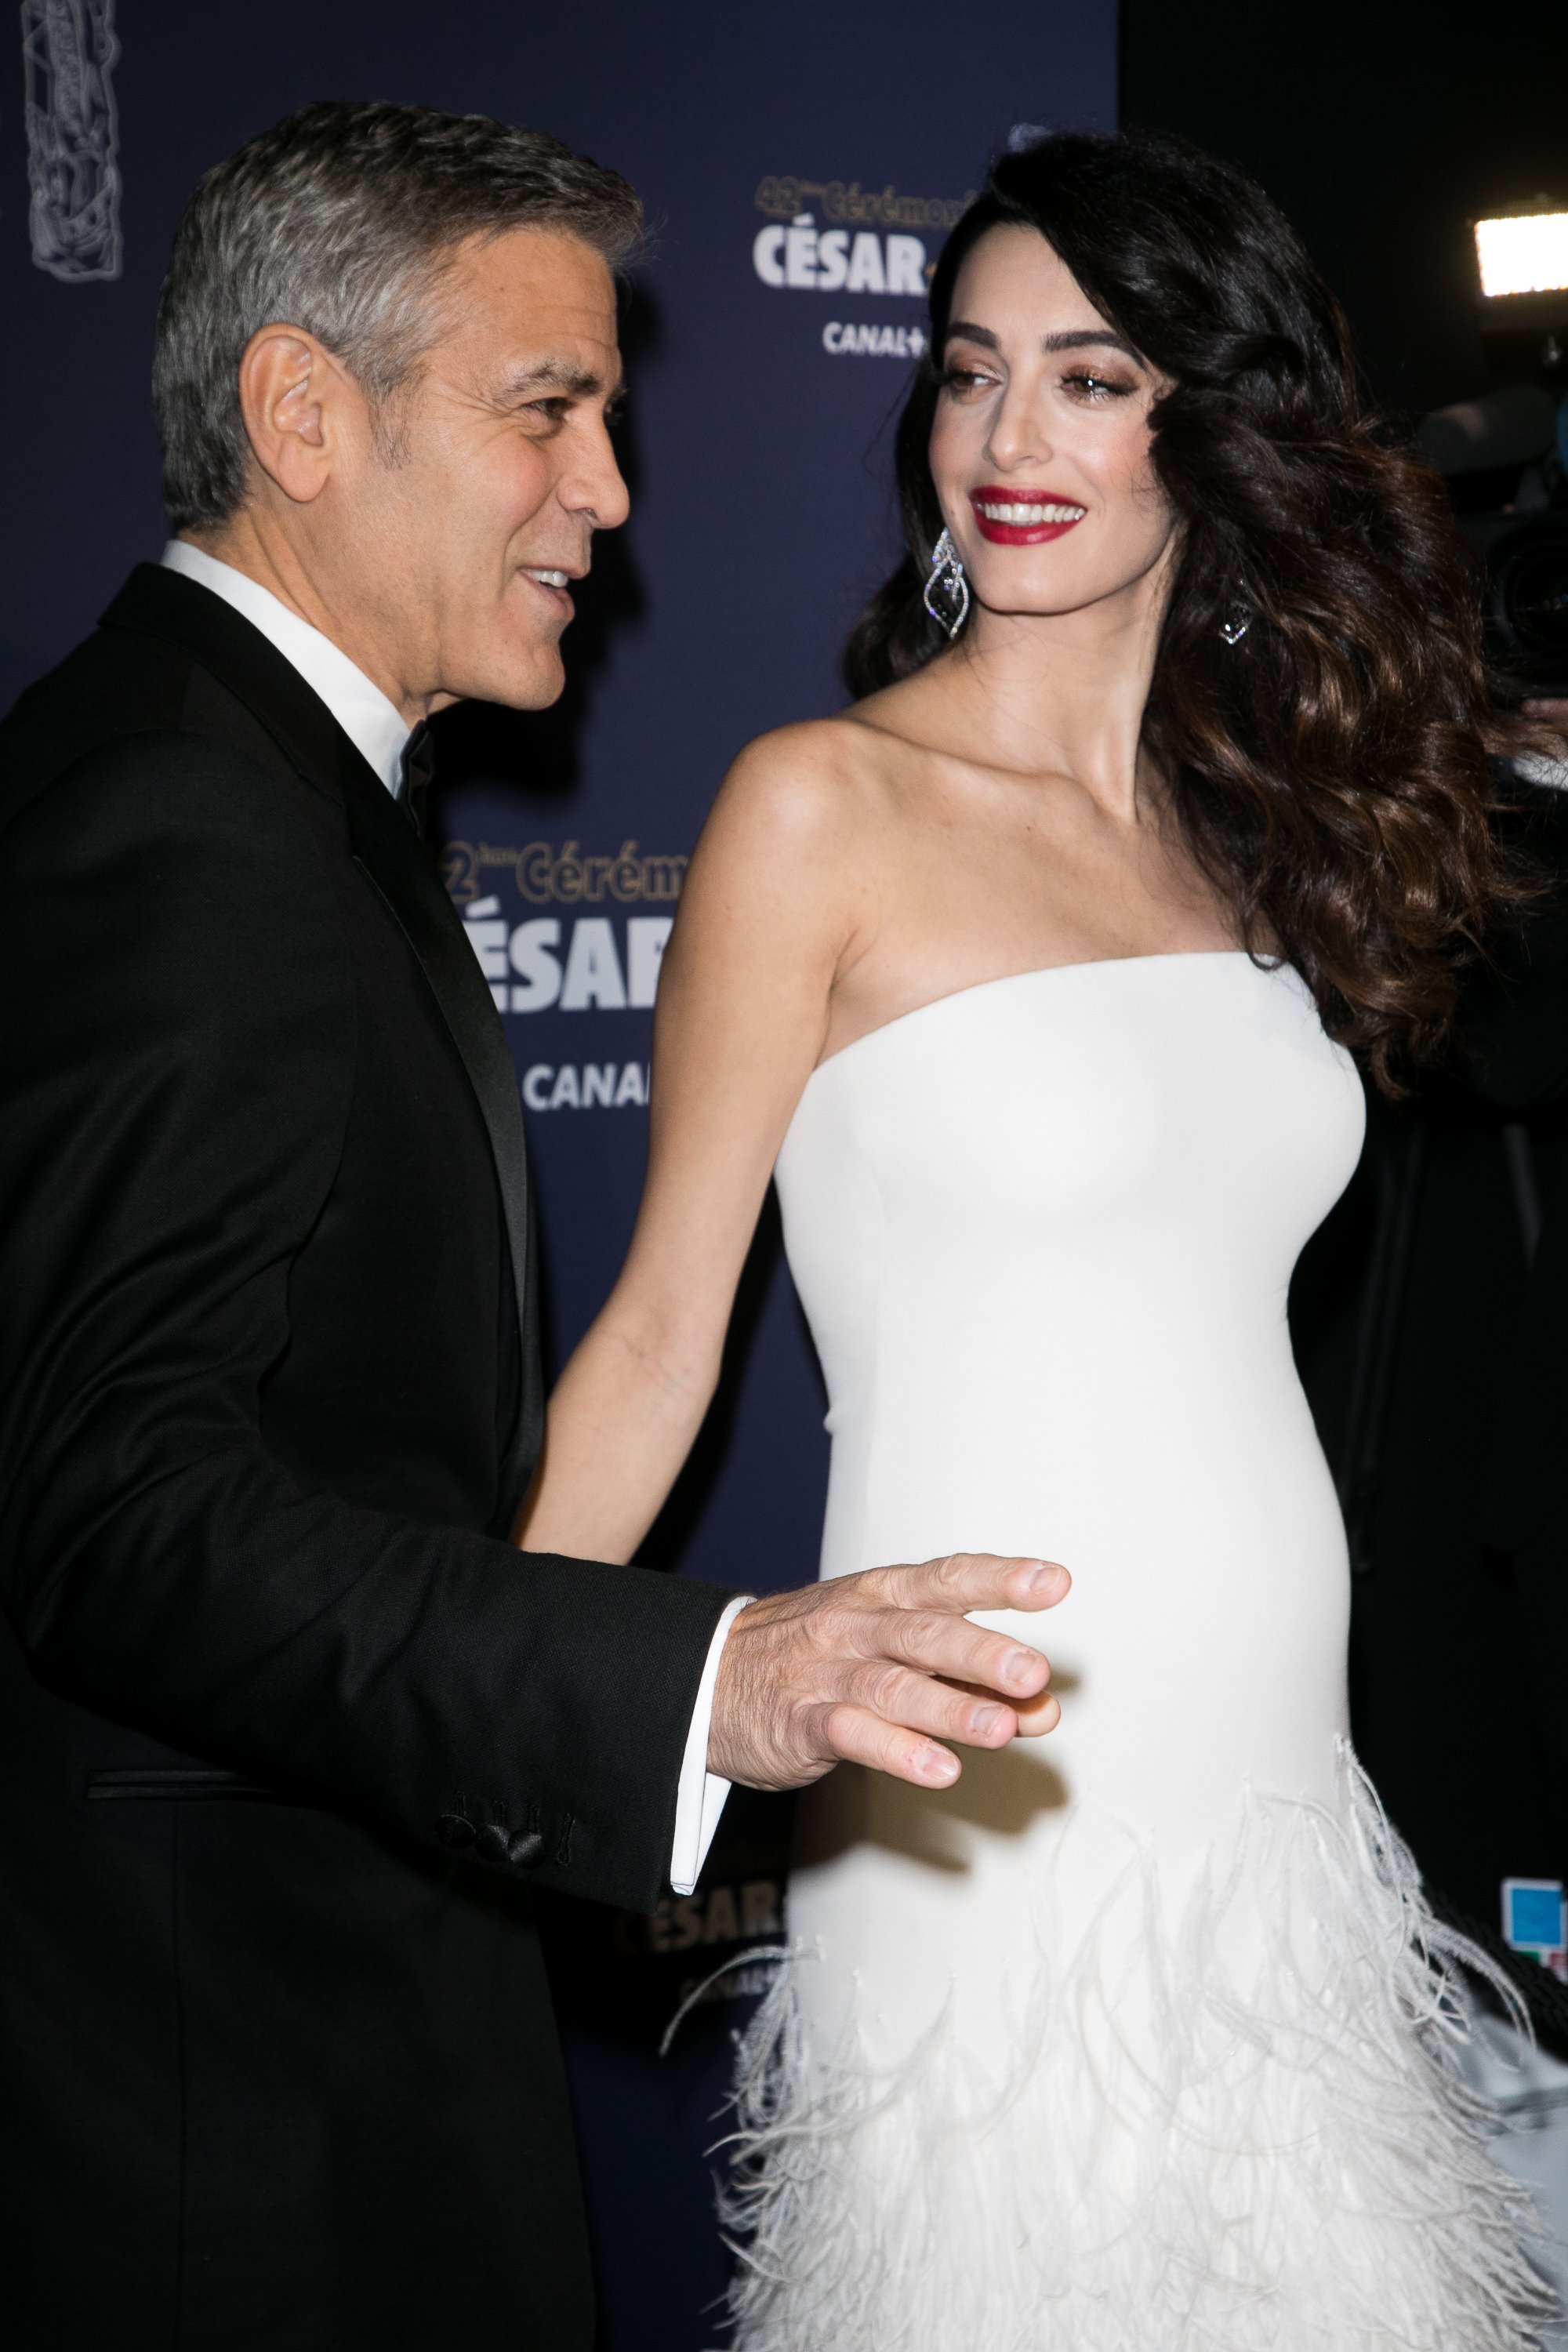 George y Amal Clooney en la ceremonia de entrega de los Premios Cinematográficos Cesar en la Salle Pleyel, el 24 de febrero de 2017 en París, Francia. | Foto: Getty Images